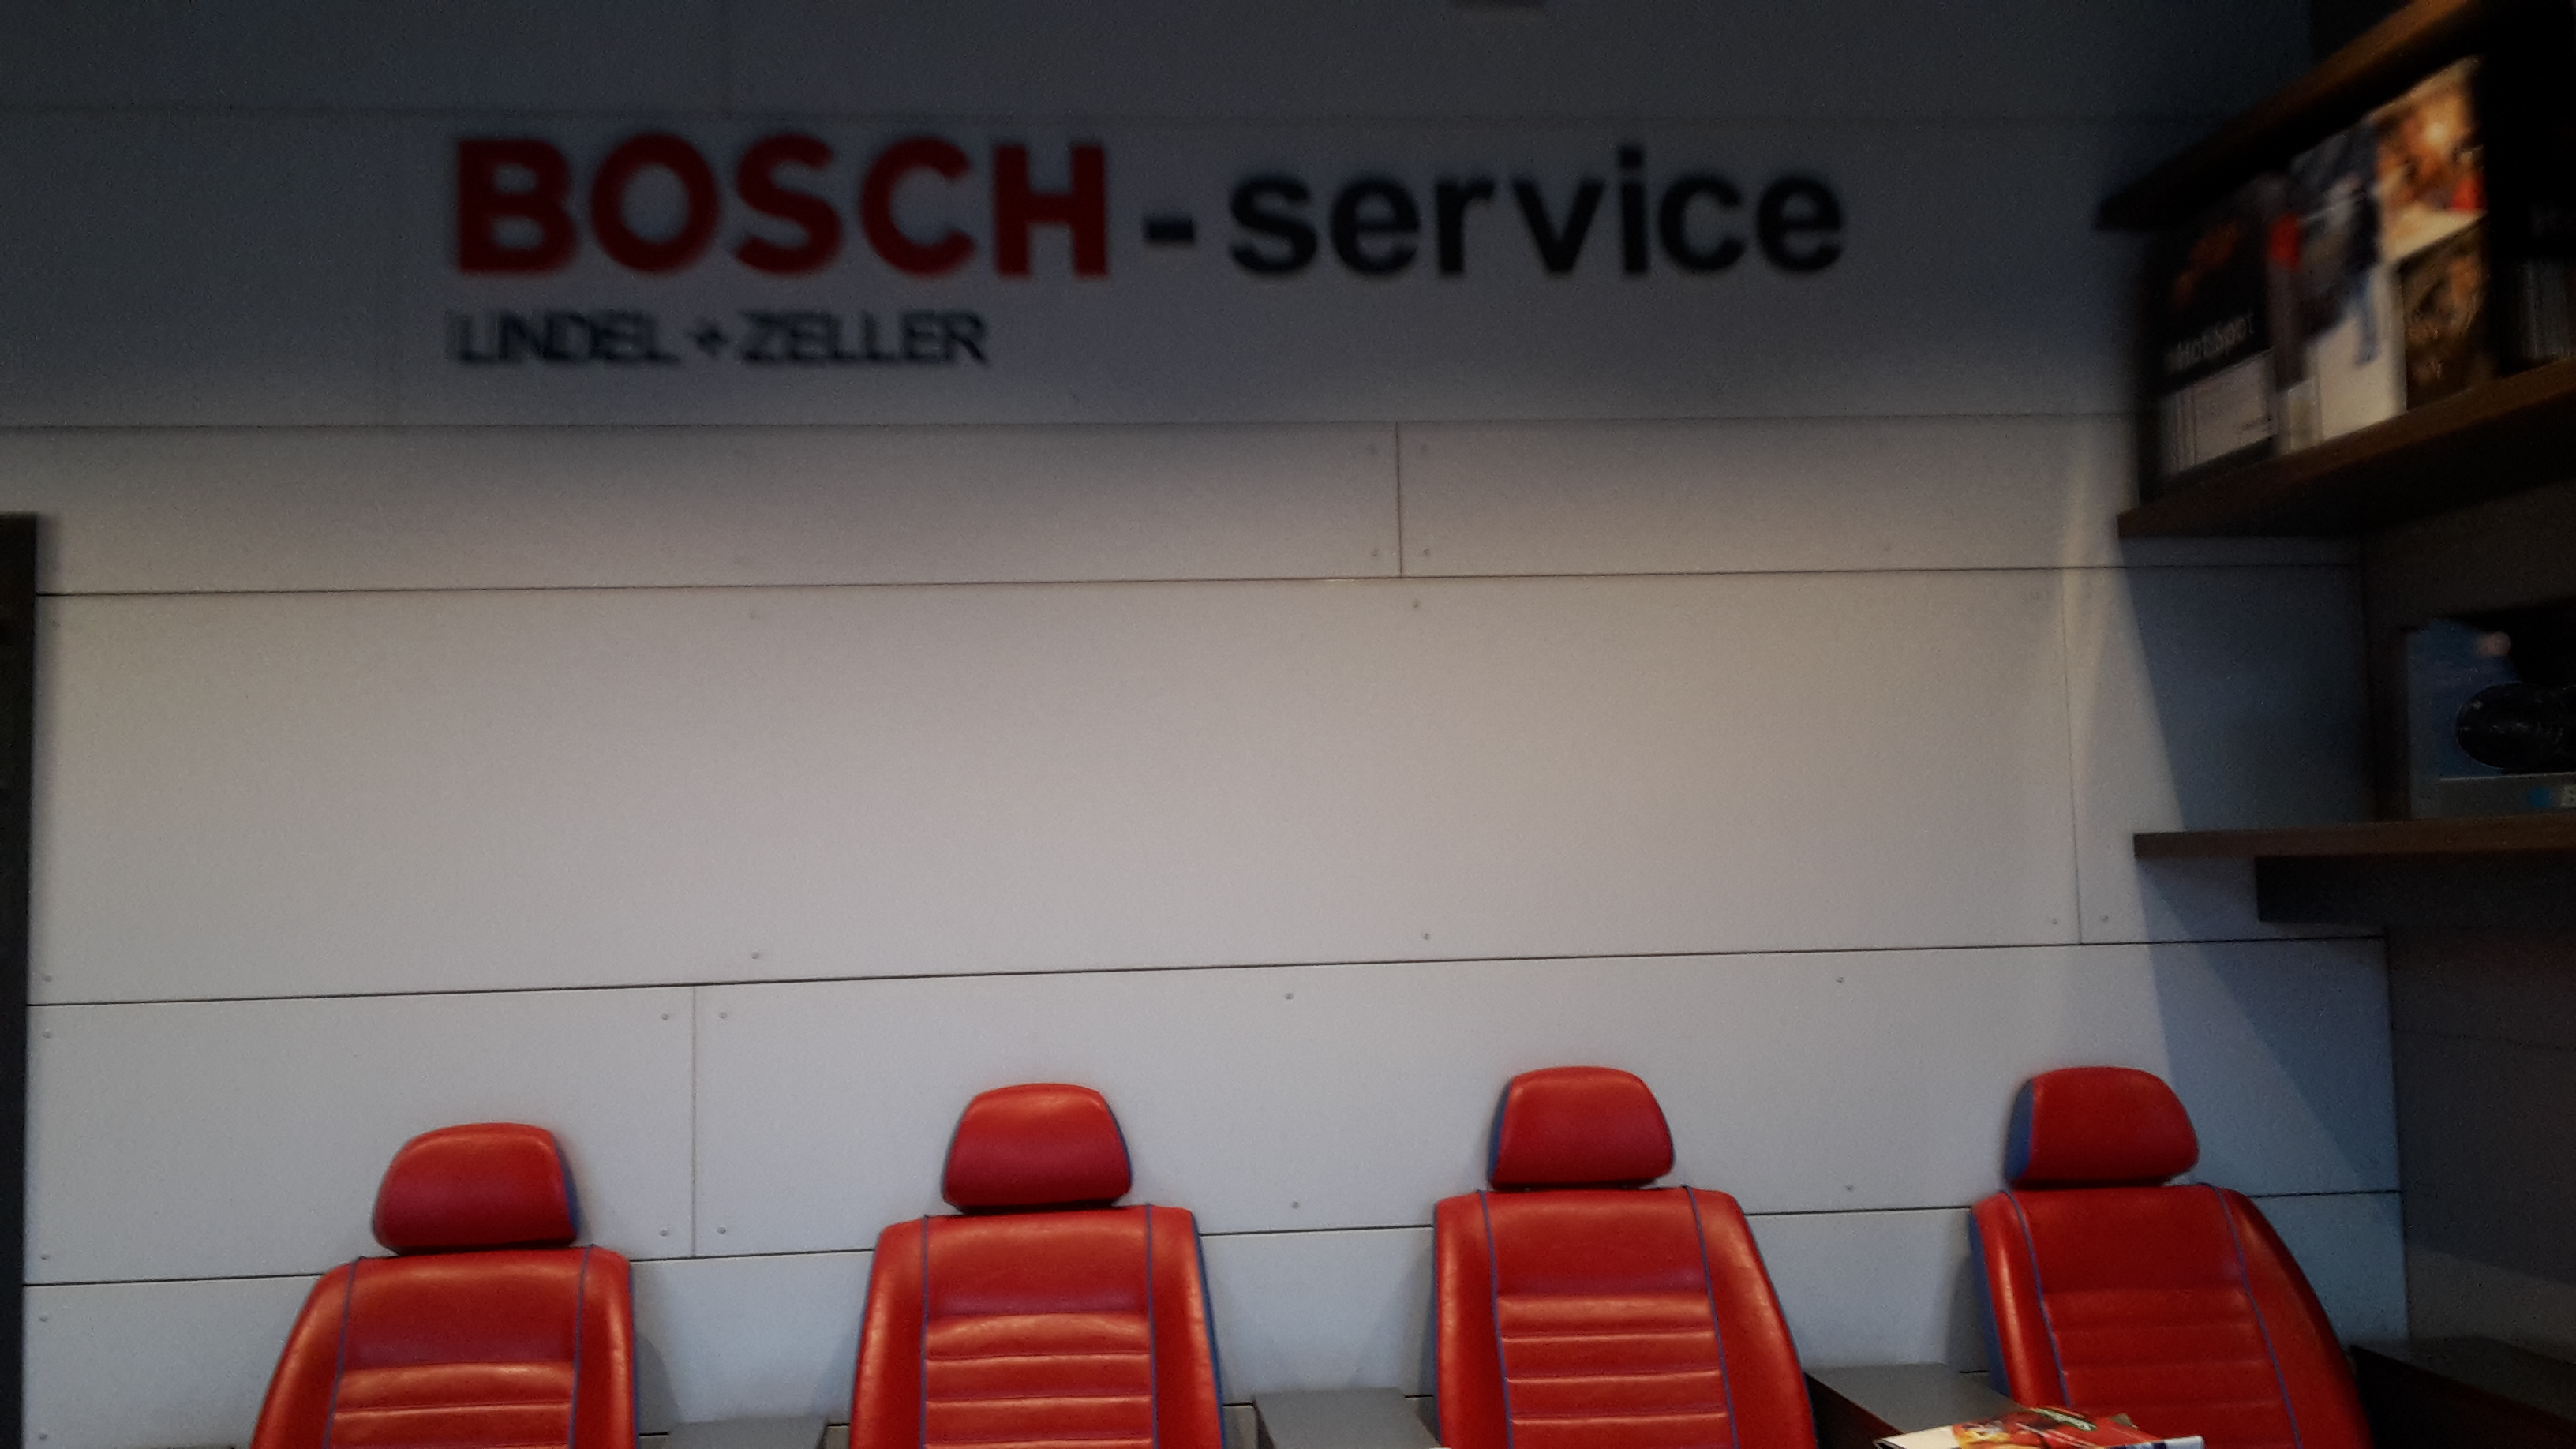 Bild 5 Bosch-Service Lindel Zeller GmbH in Baienfurt